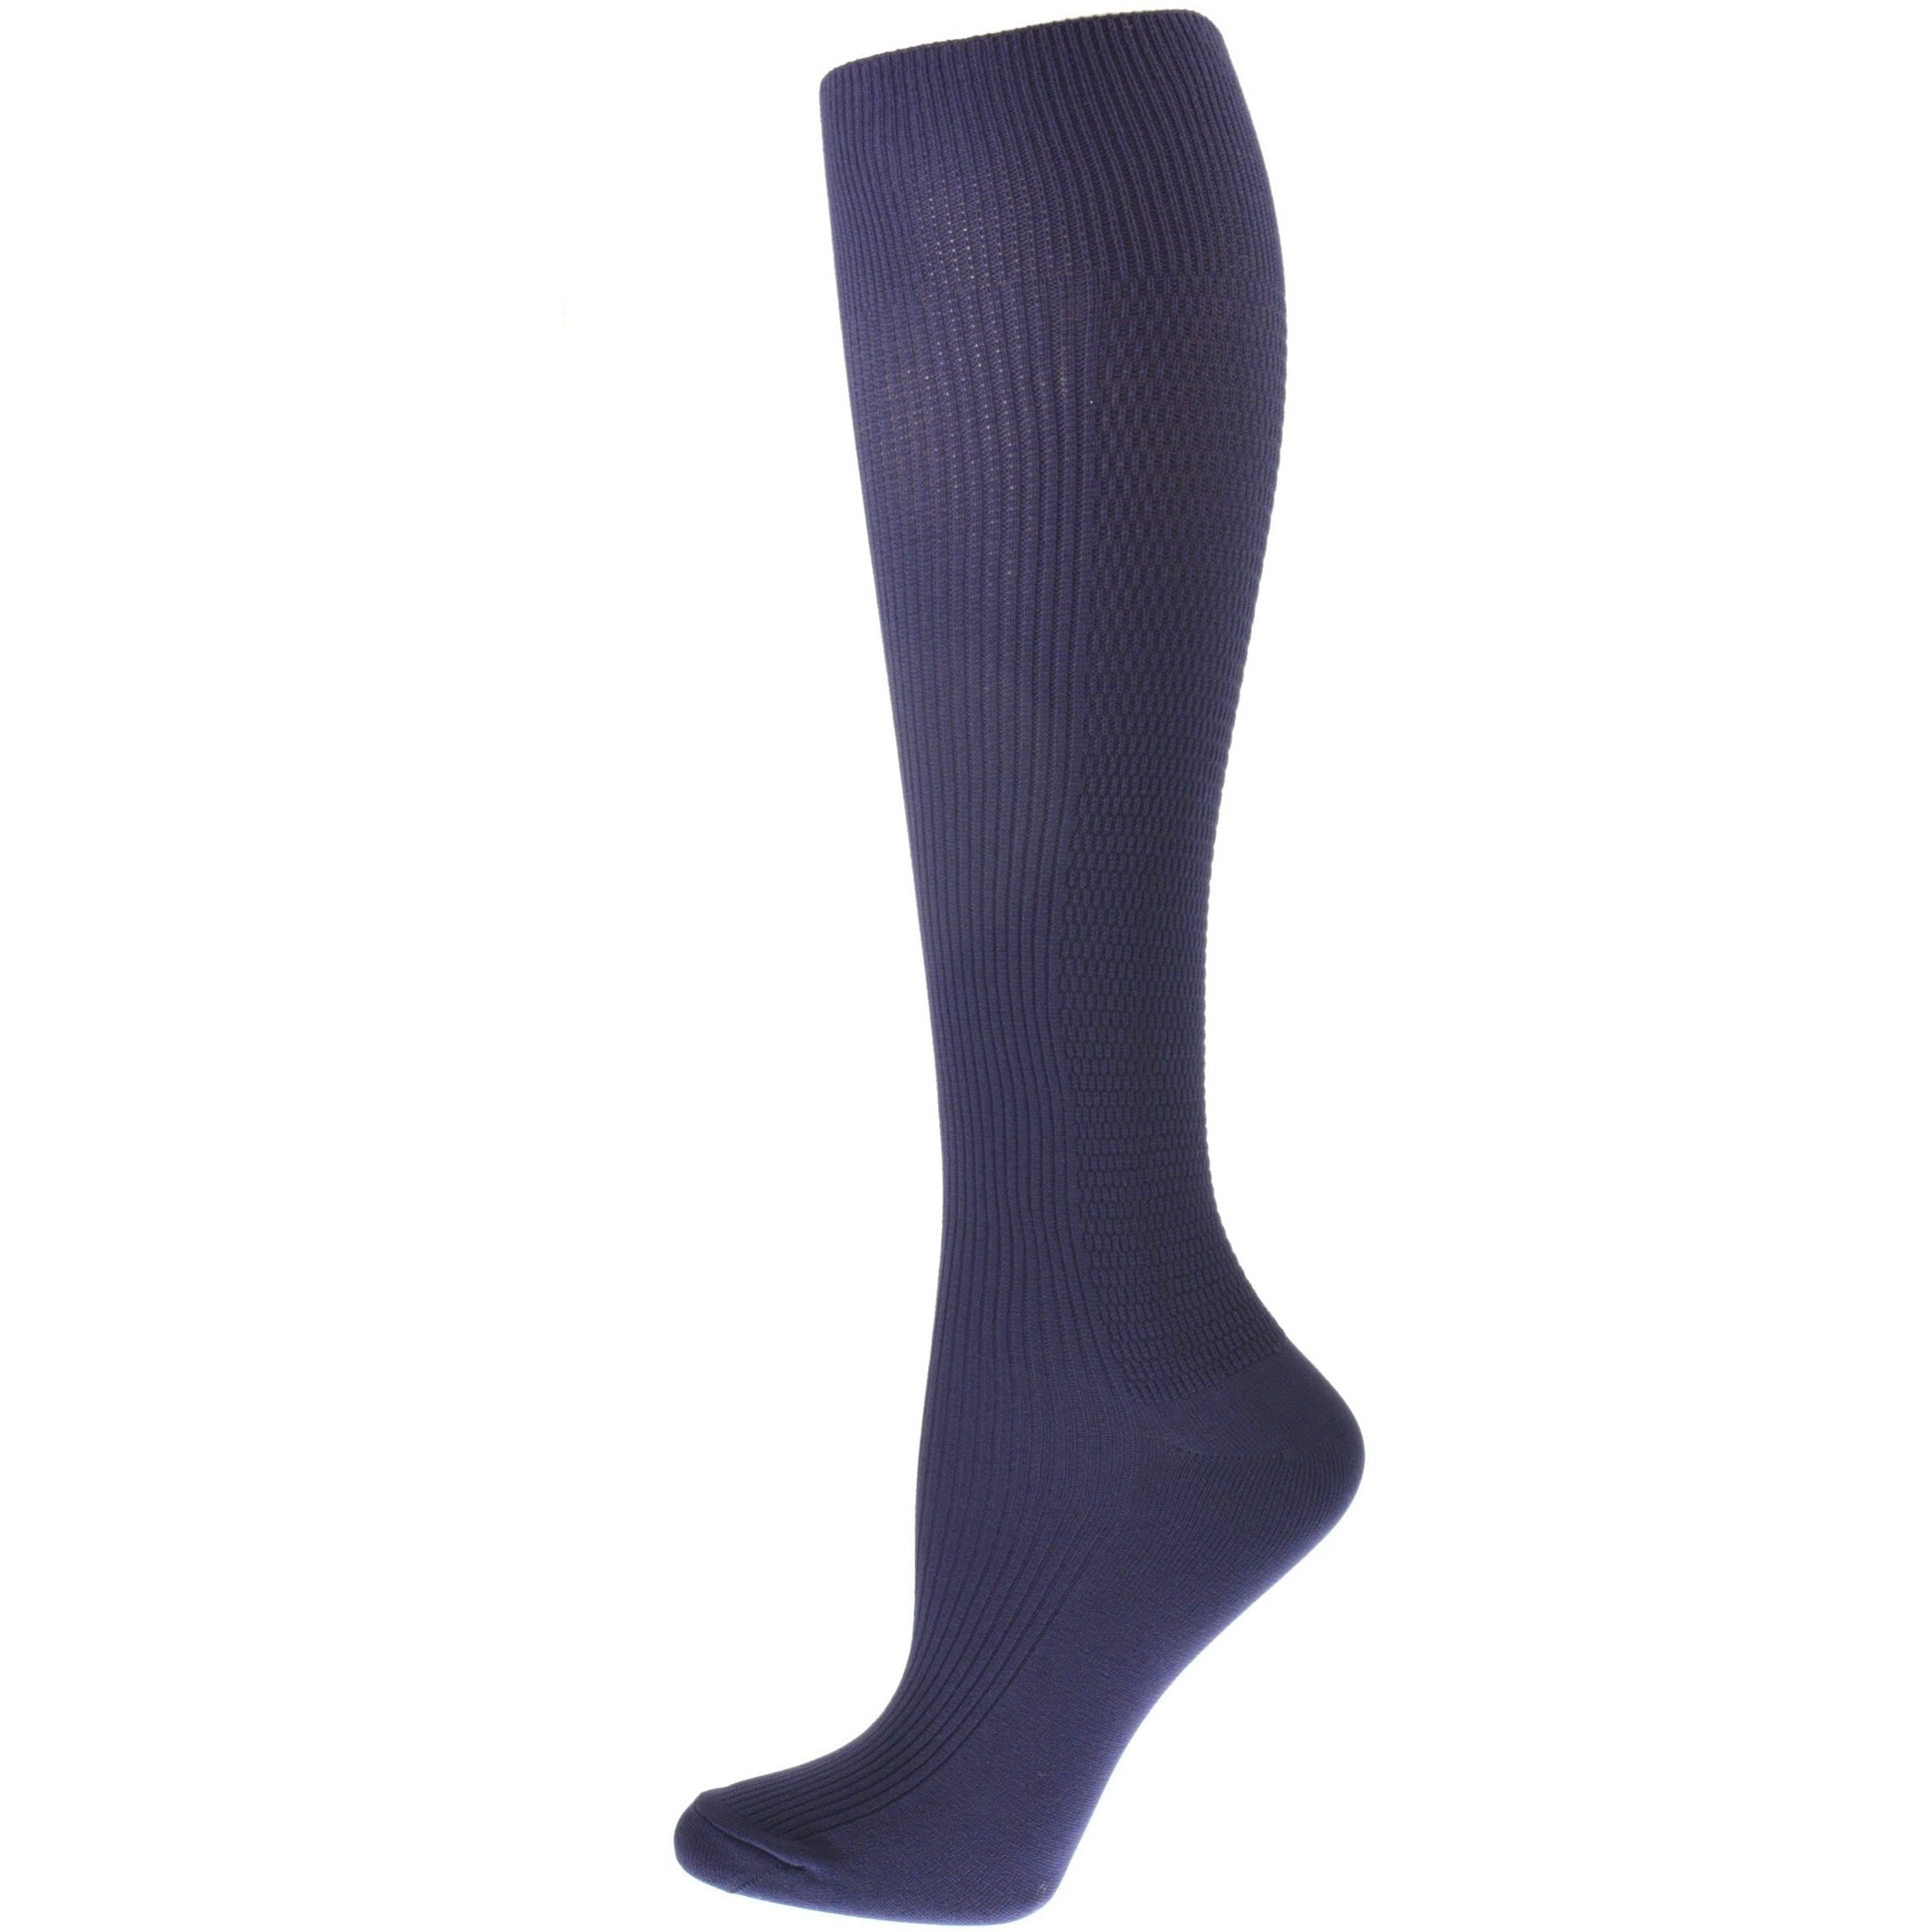 Sierra Socks Men's OTC Nylon Support Hose Compression Travel Socks Made ...